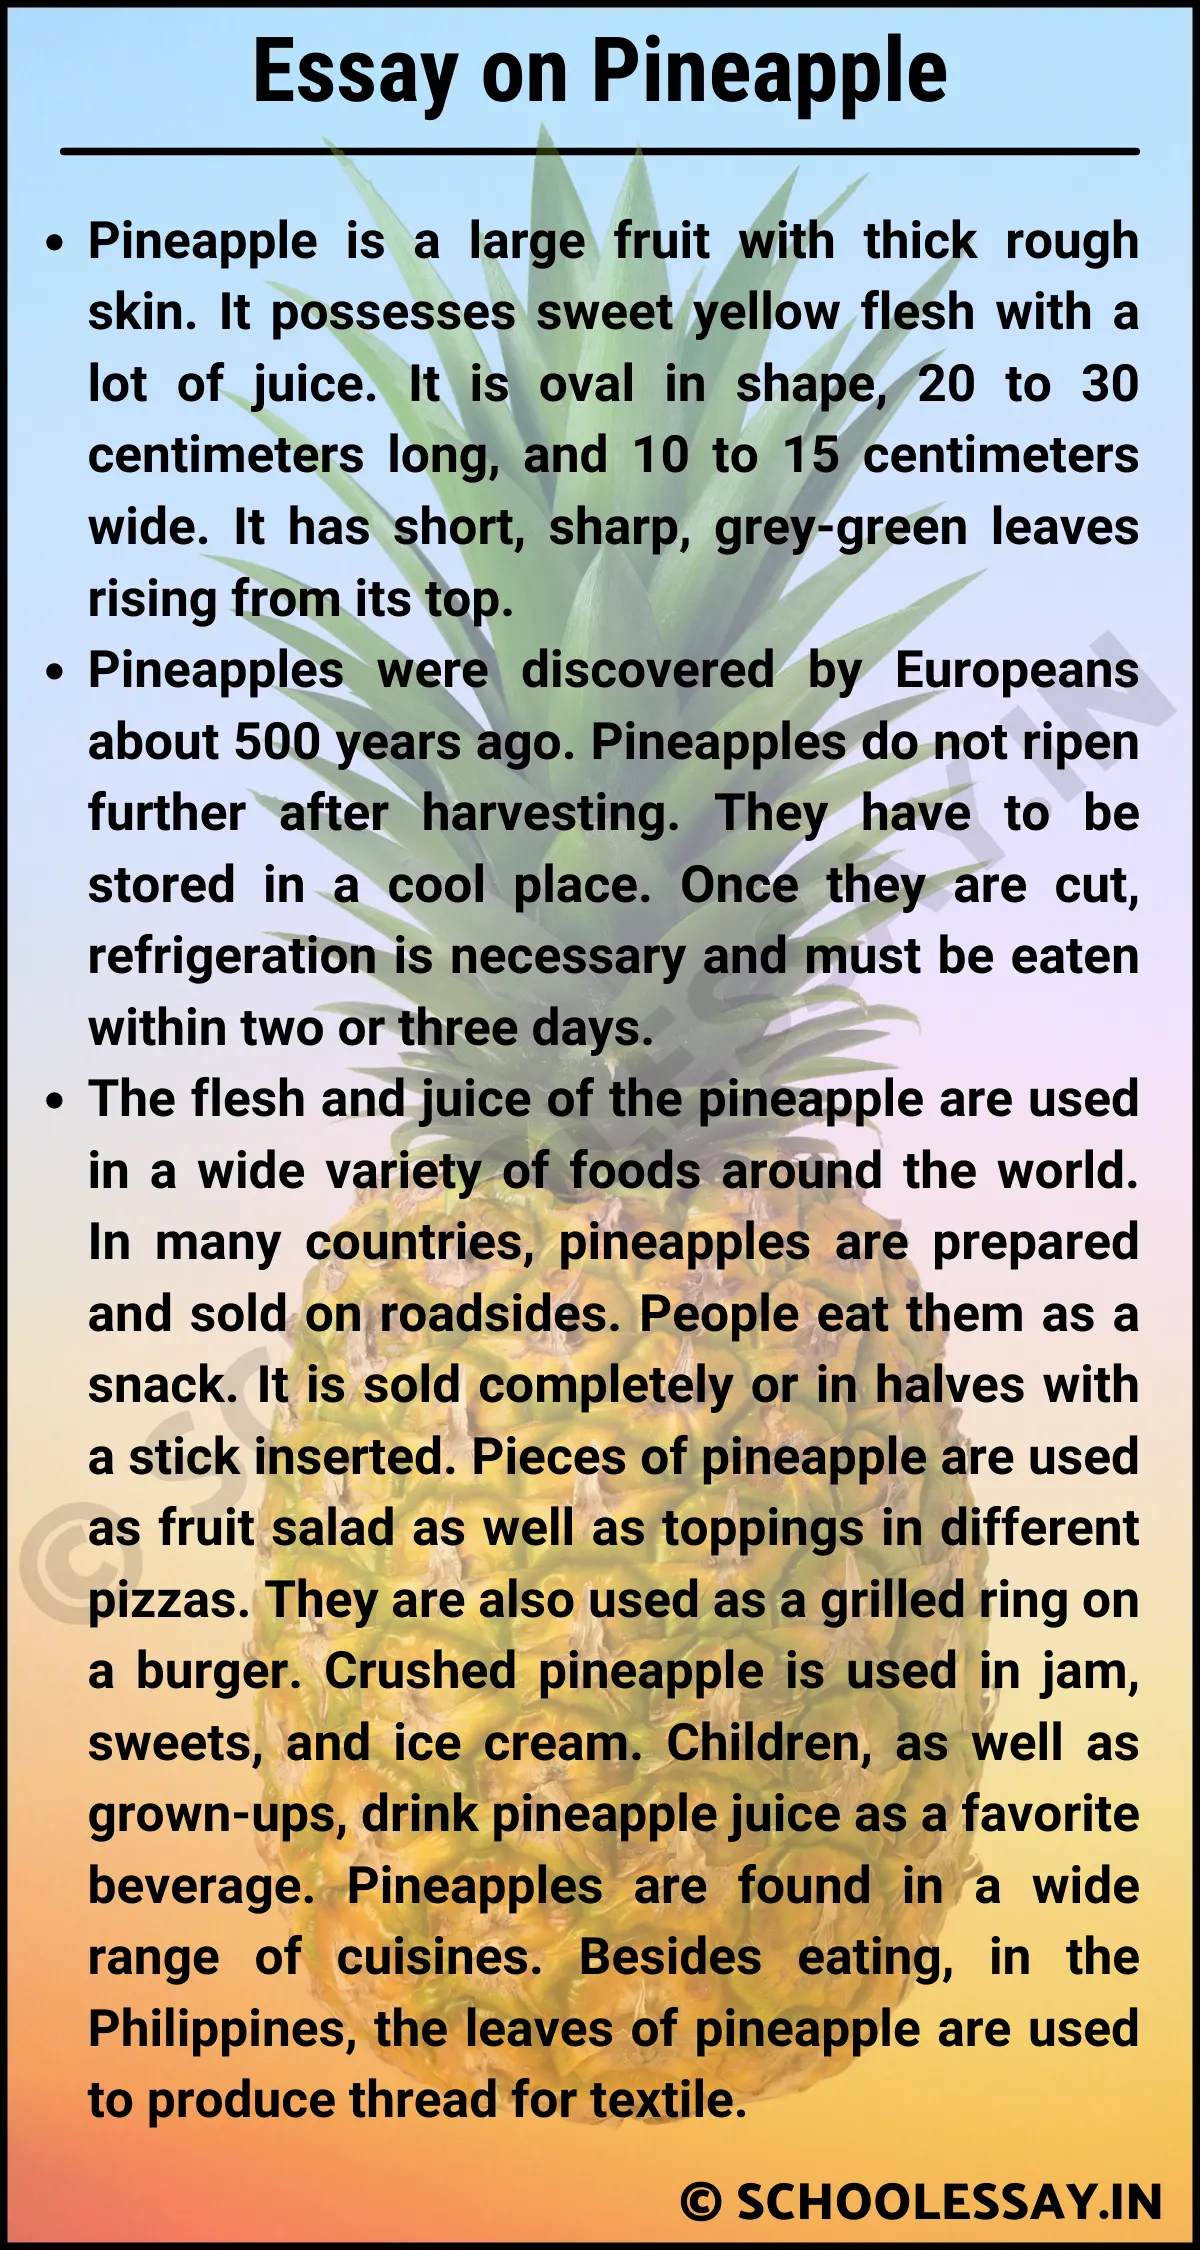 Essay on Pineapple